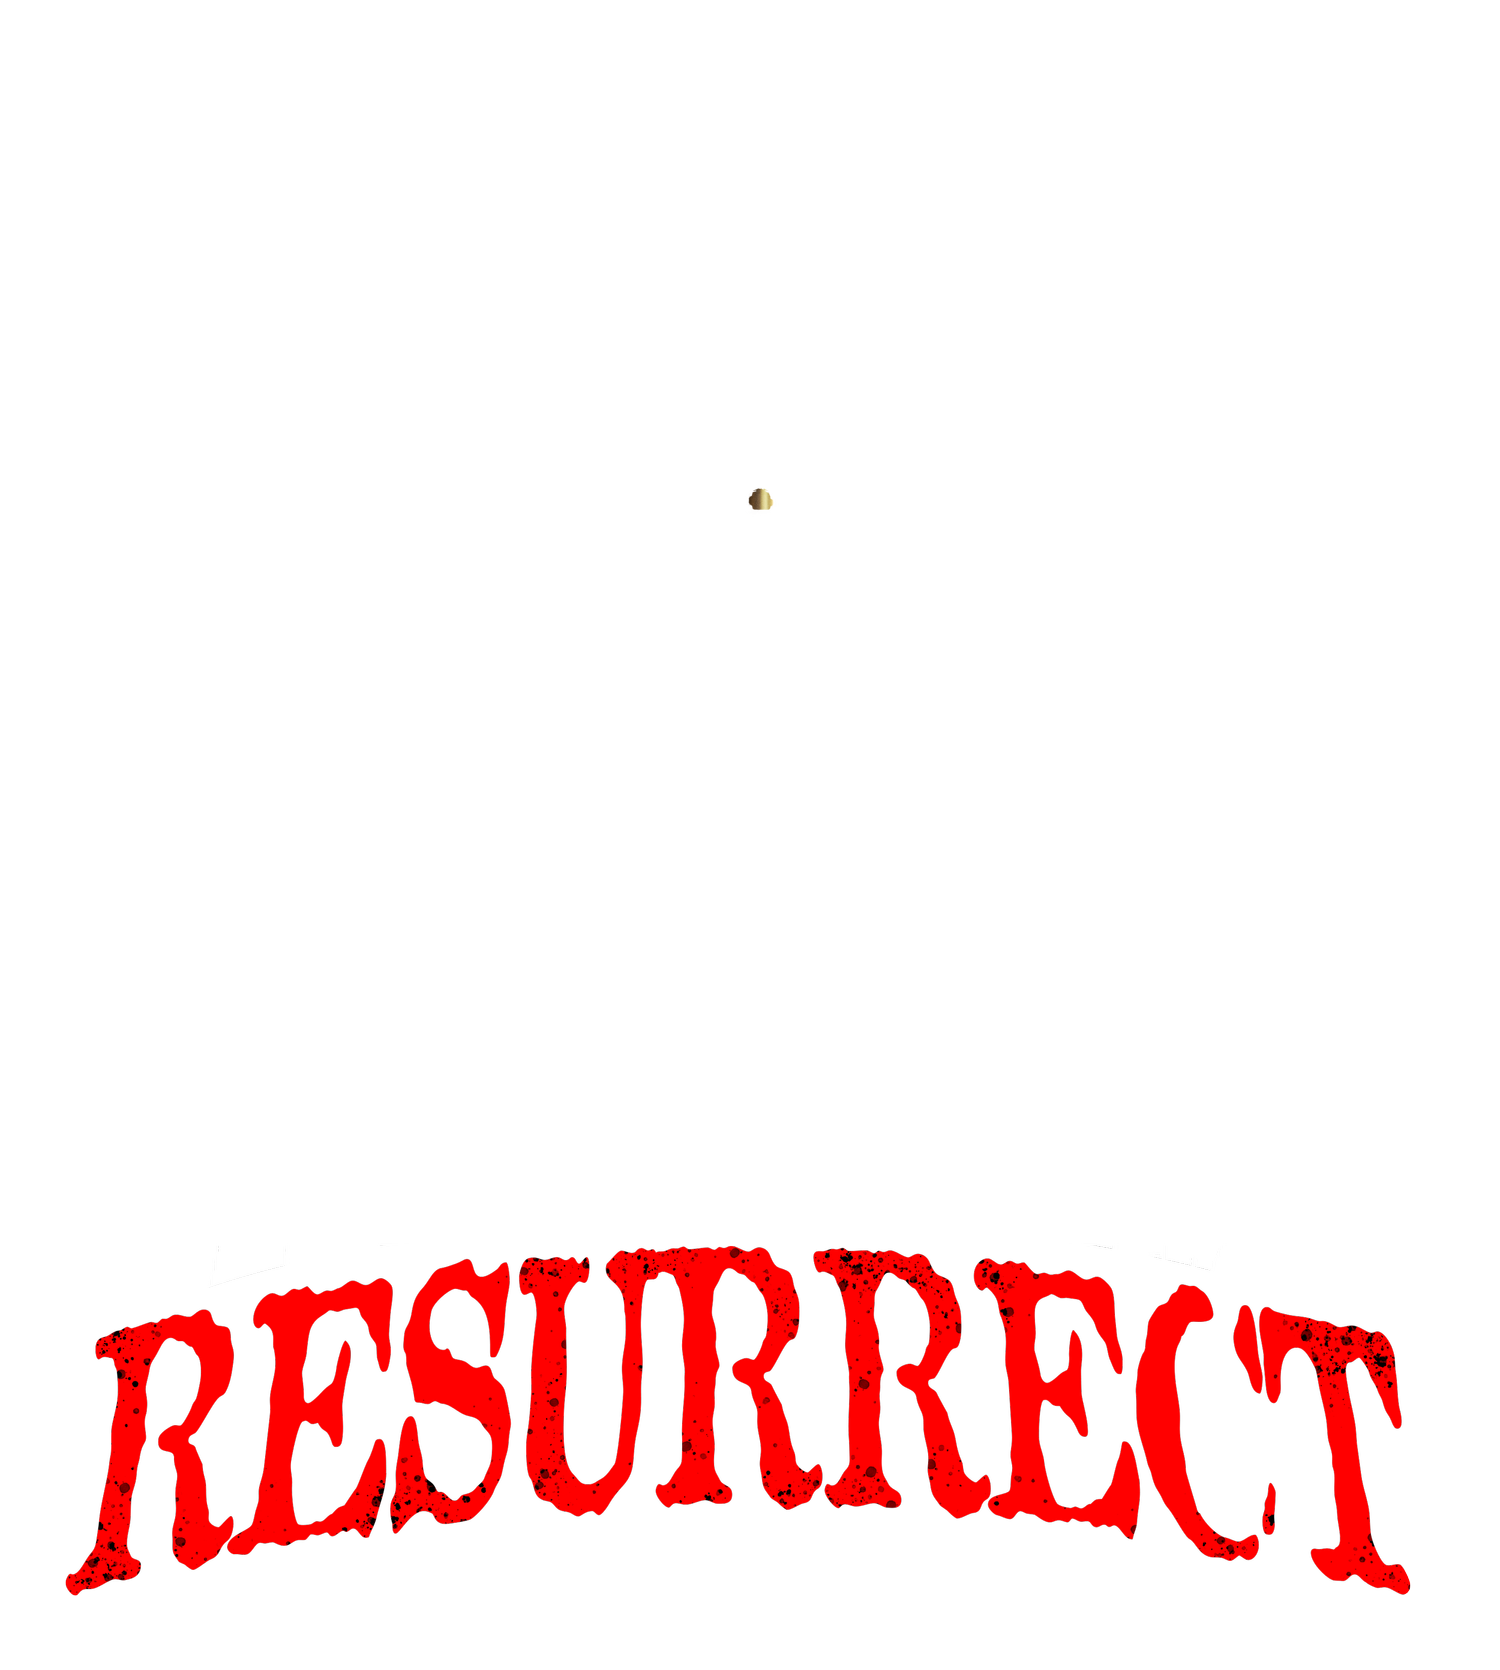 do not resurrect